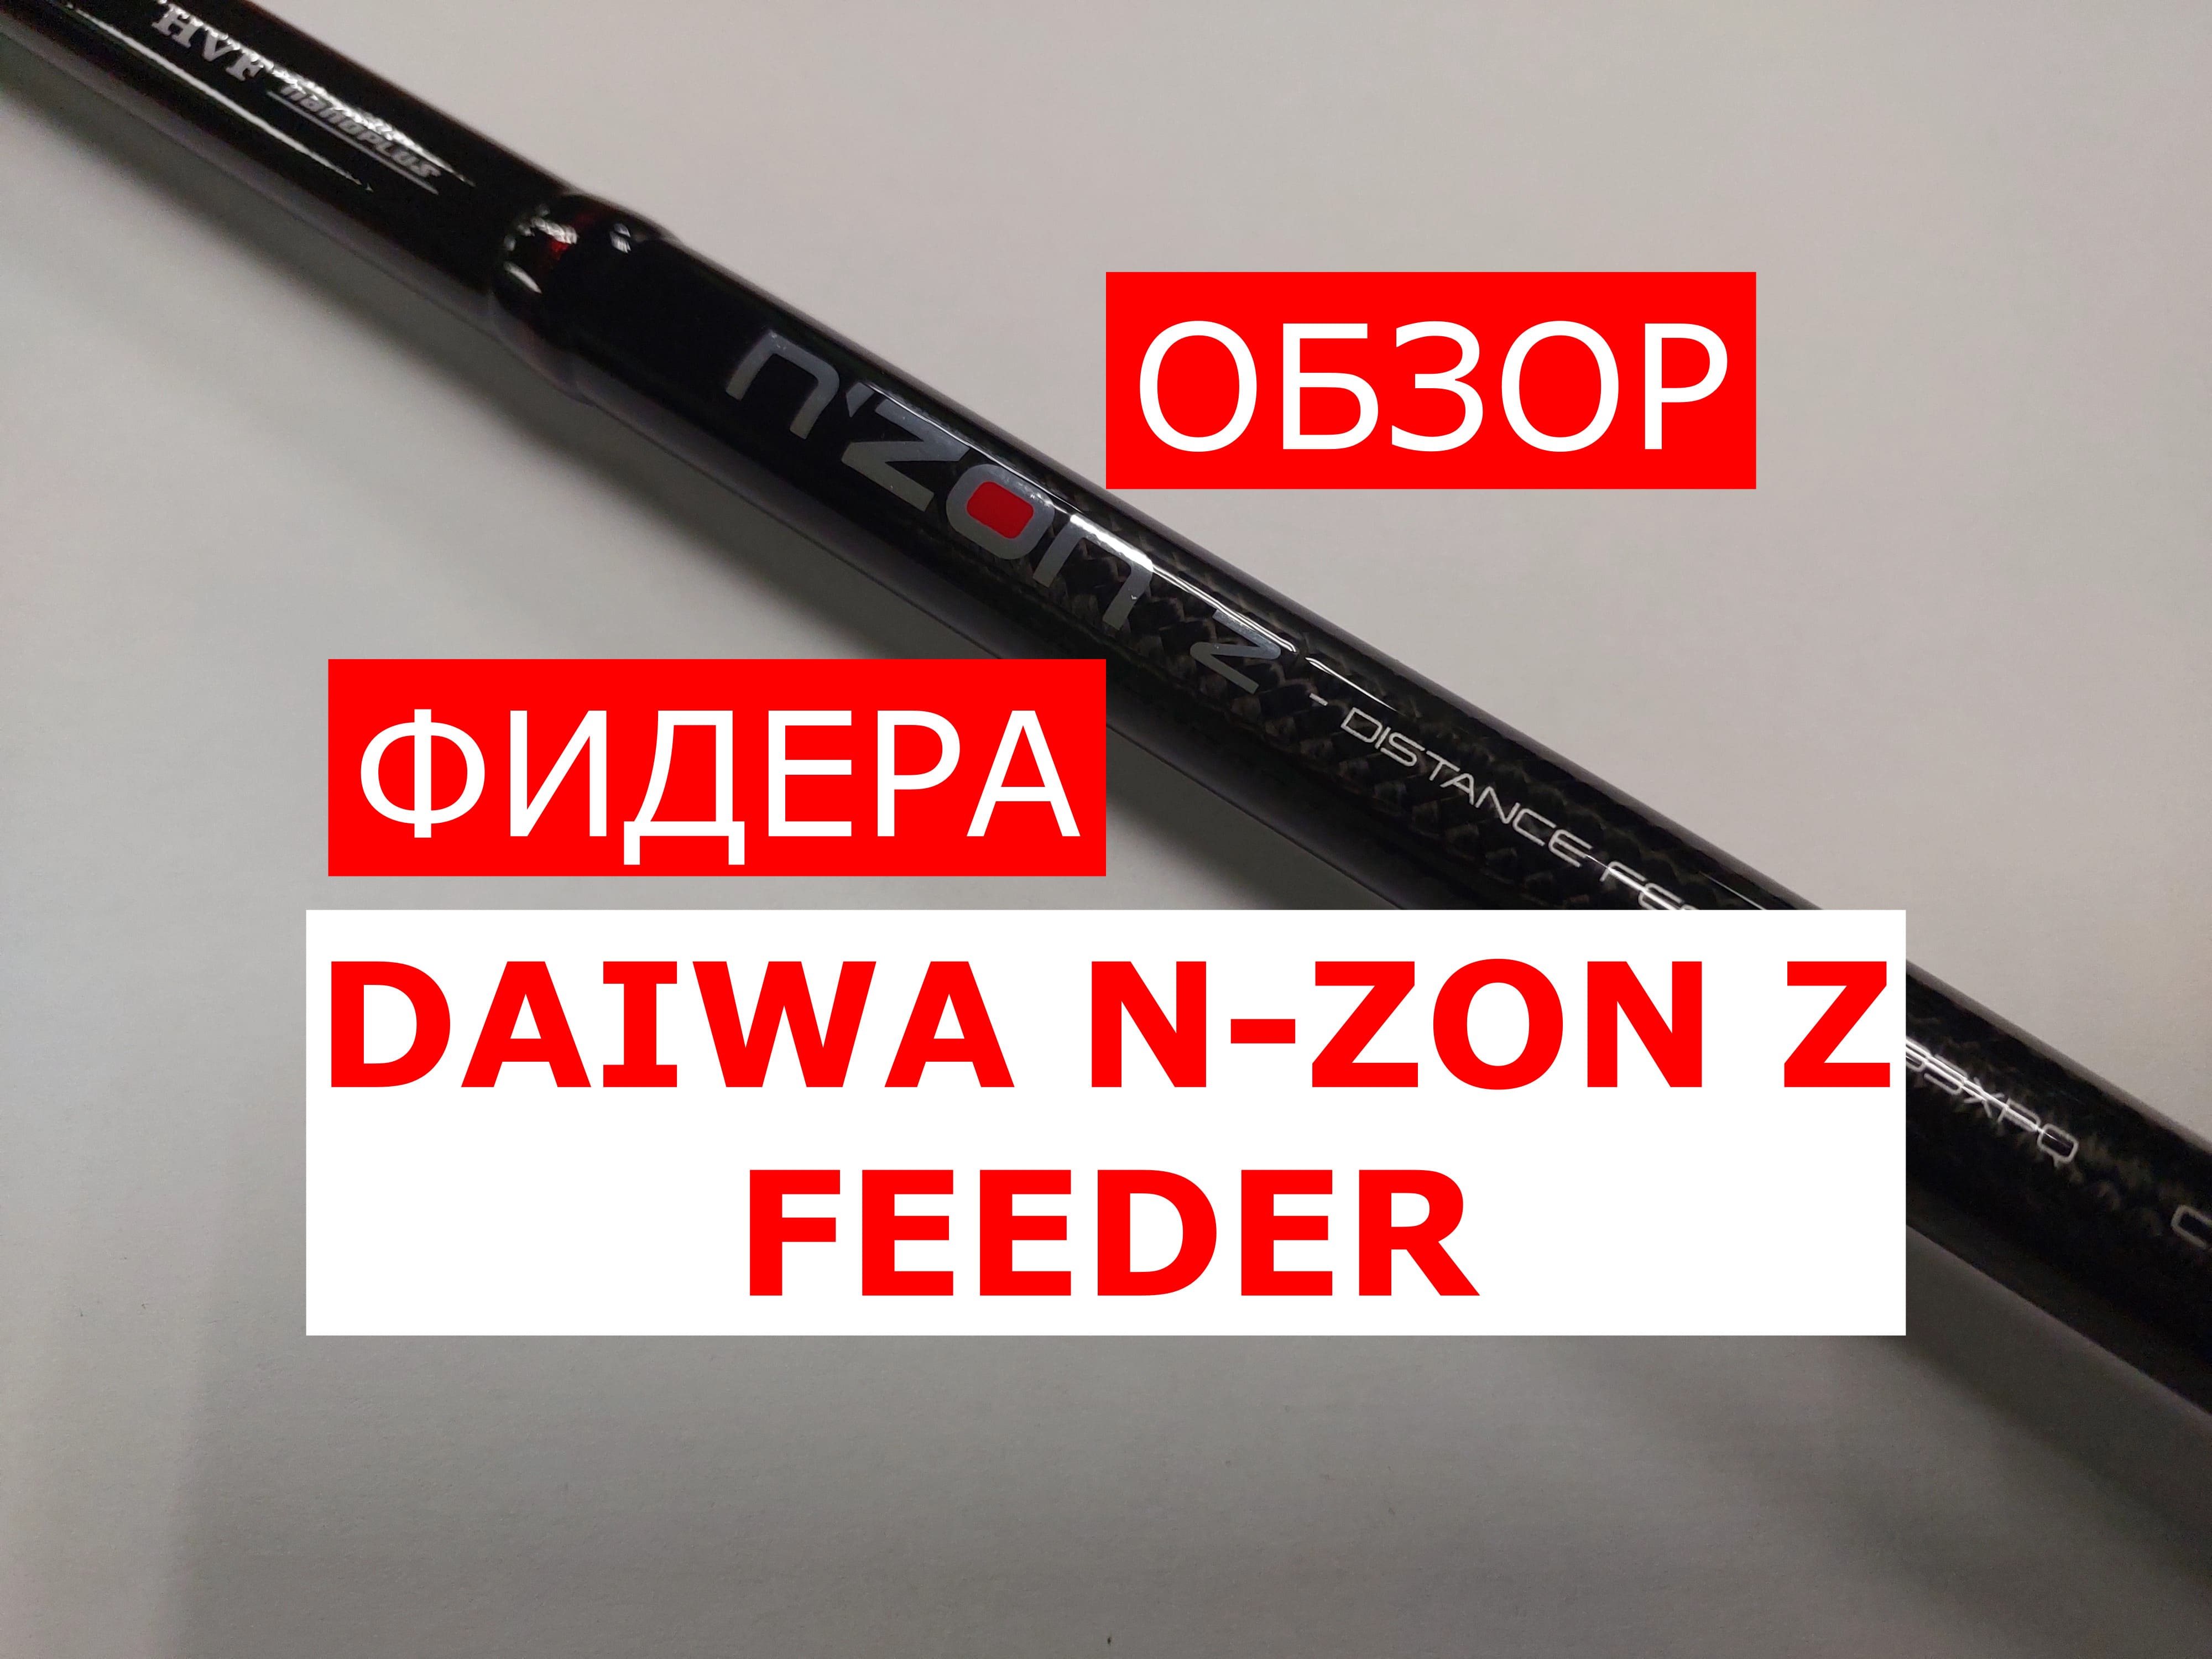 Фидер DAIWA N-ZON Z FEEDER | ОБЗОР фидерного удилища ДАЙВА НЗОН З 390см/150гр.